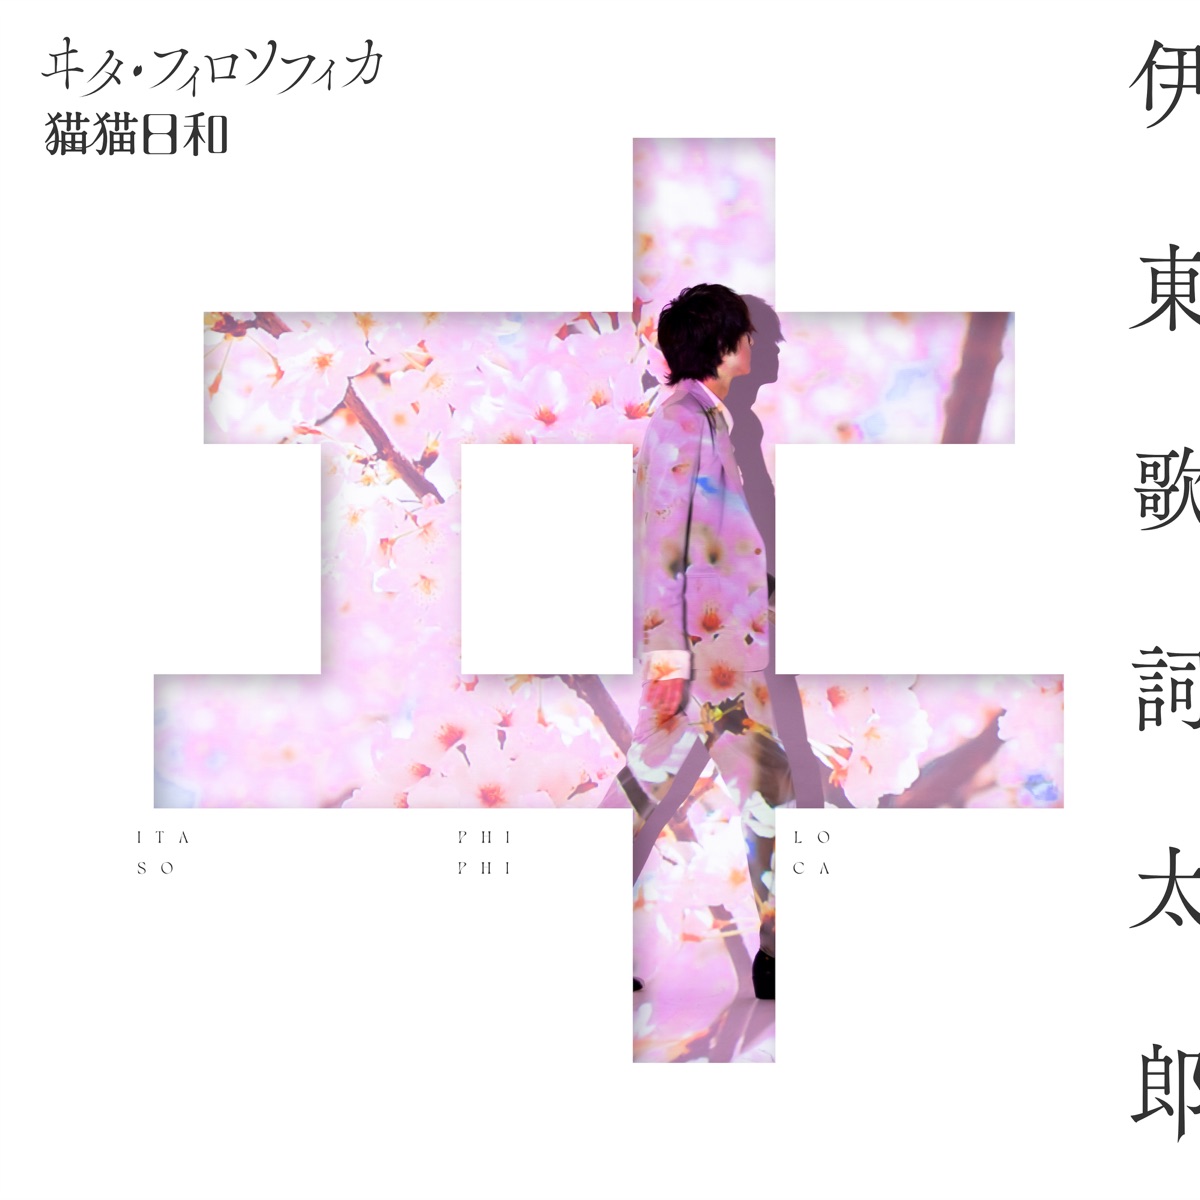 Cover image of『Kashitaro ItoVita Philosophica』from the Album『Ita Philosophica』